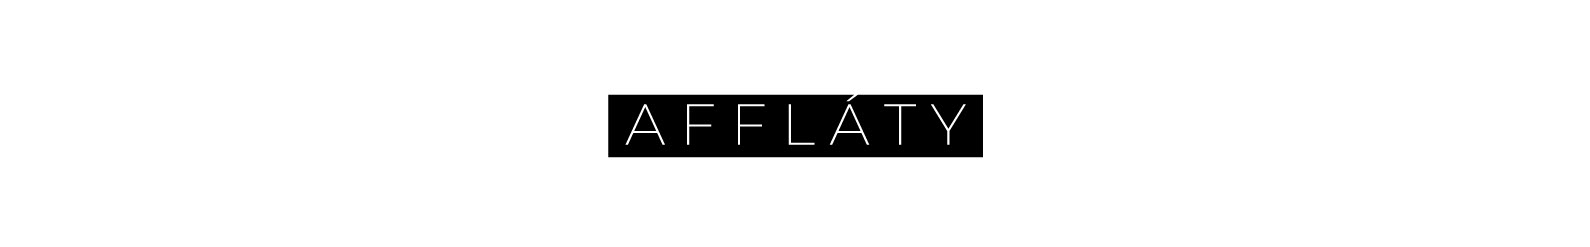 Profil-Banner von A F F L Á T Y